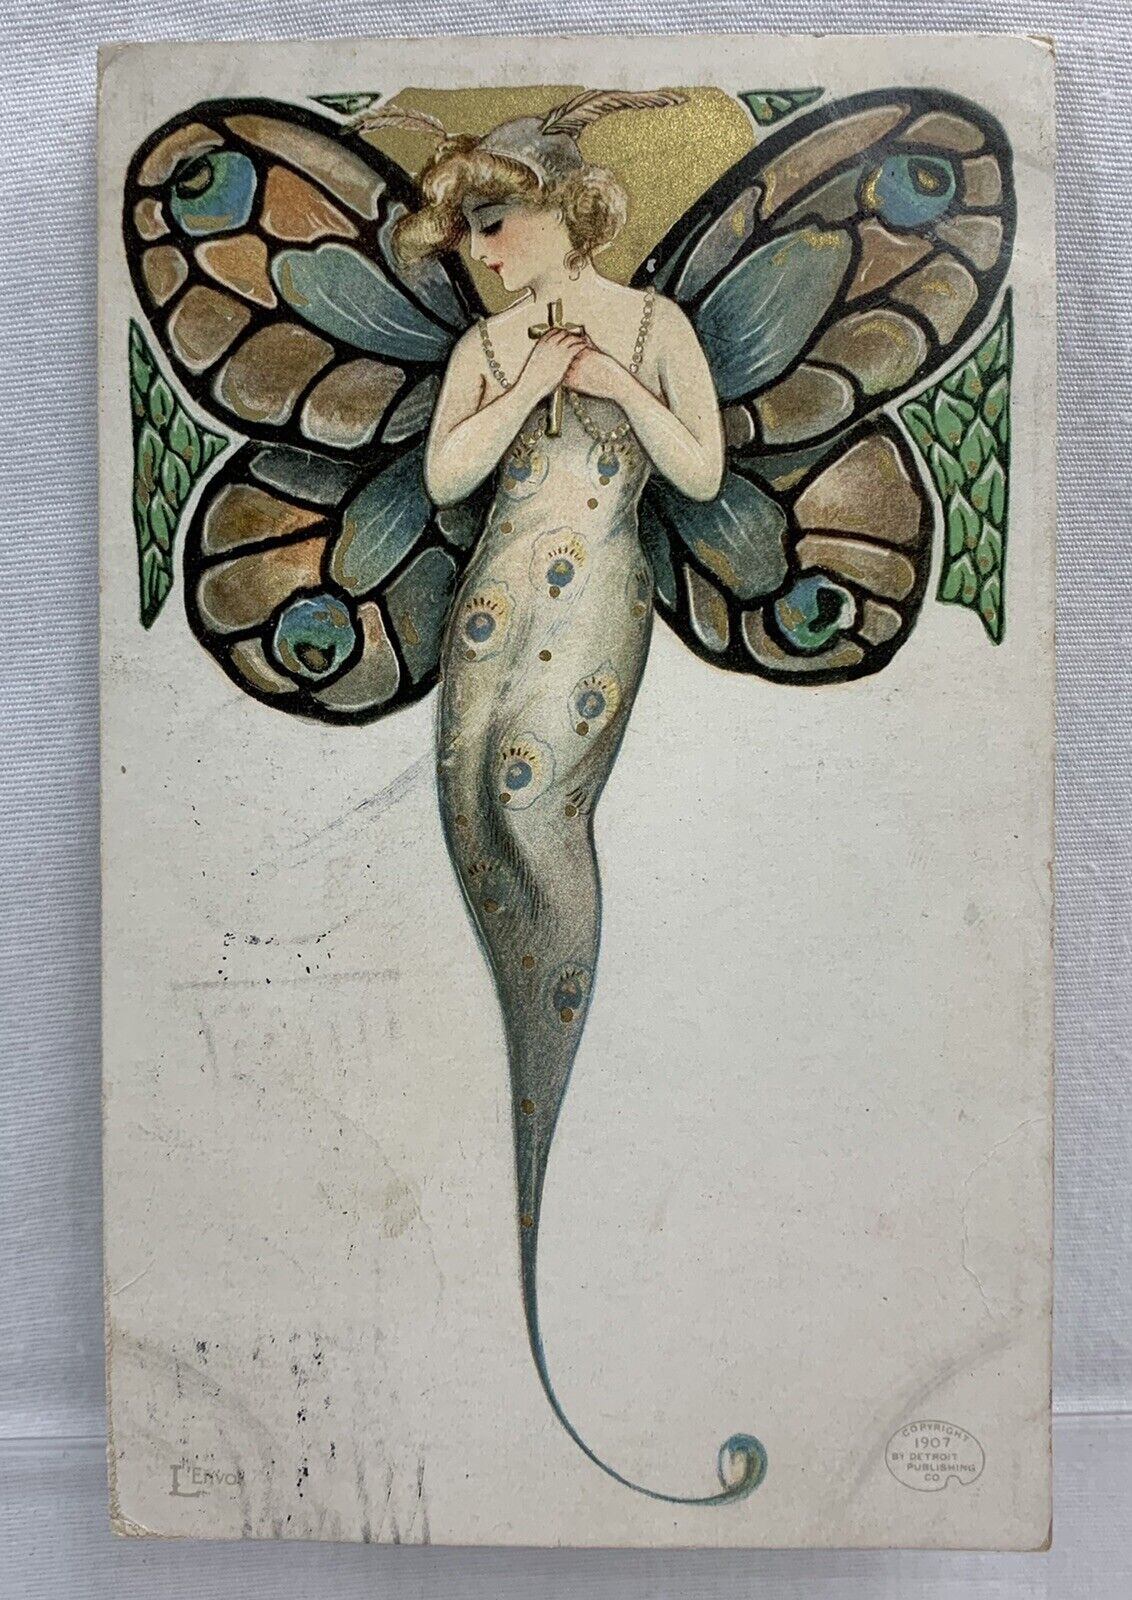 Schmucker Nouveau Beautiful Butterfly Girls Series L\'Envoi Detroit Pub. Co 1907